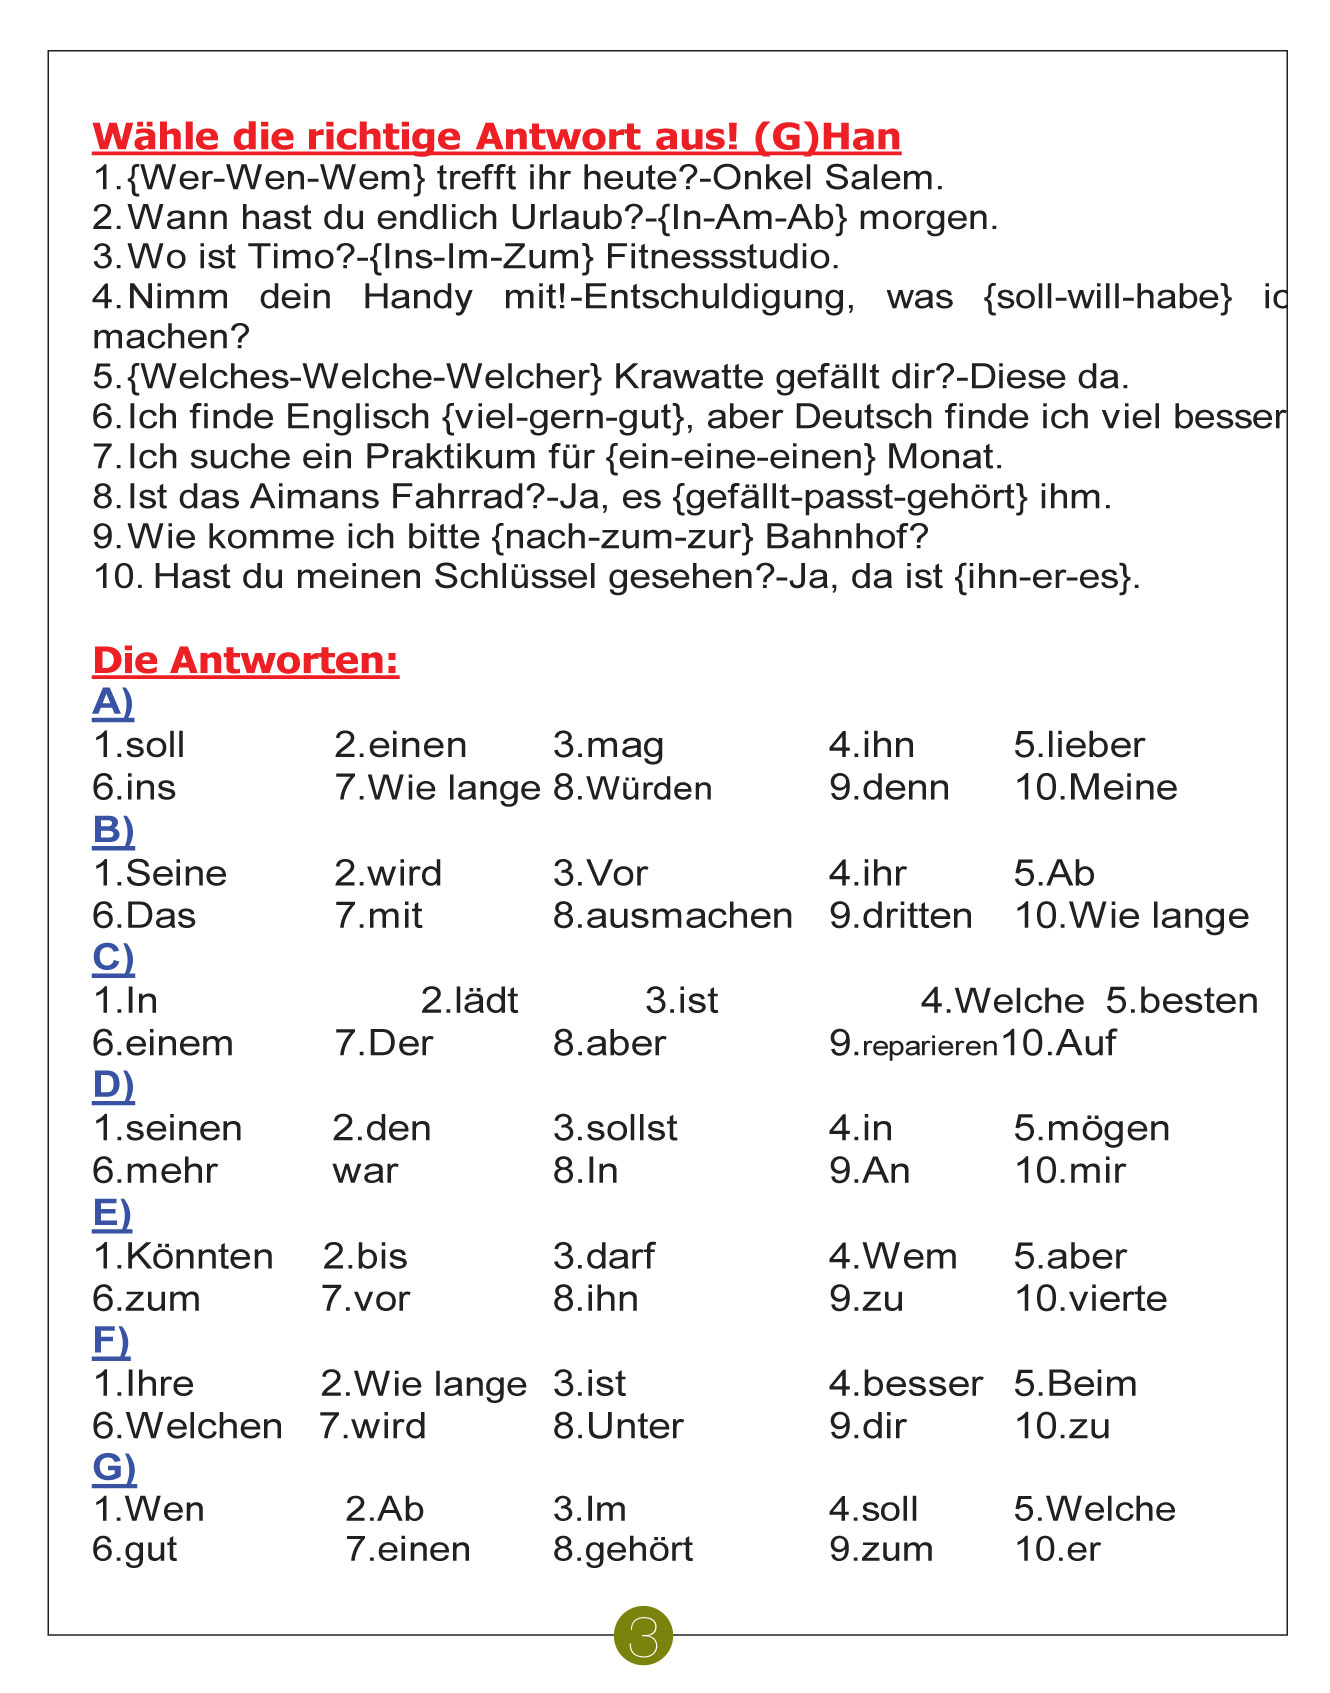 المراجعة النهائية لطلاب الثانوية العامة لمادة اللغة الألمانية (3)